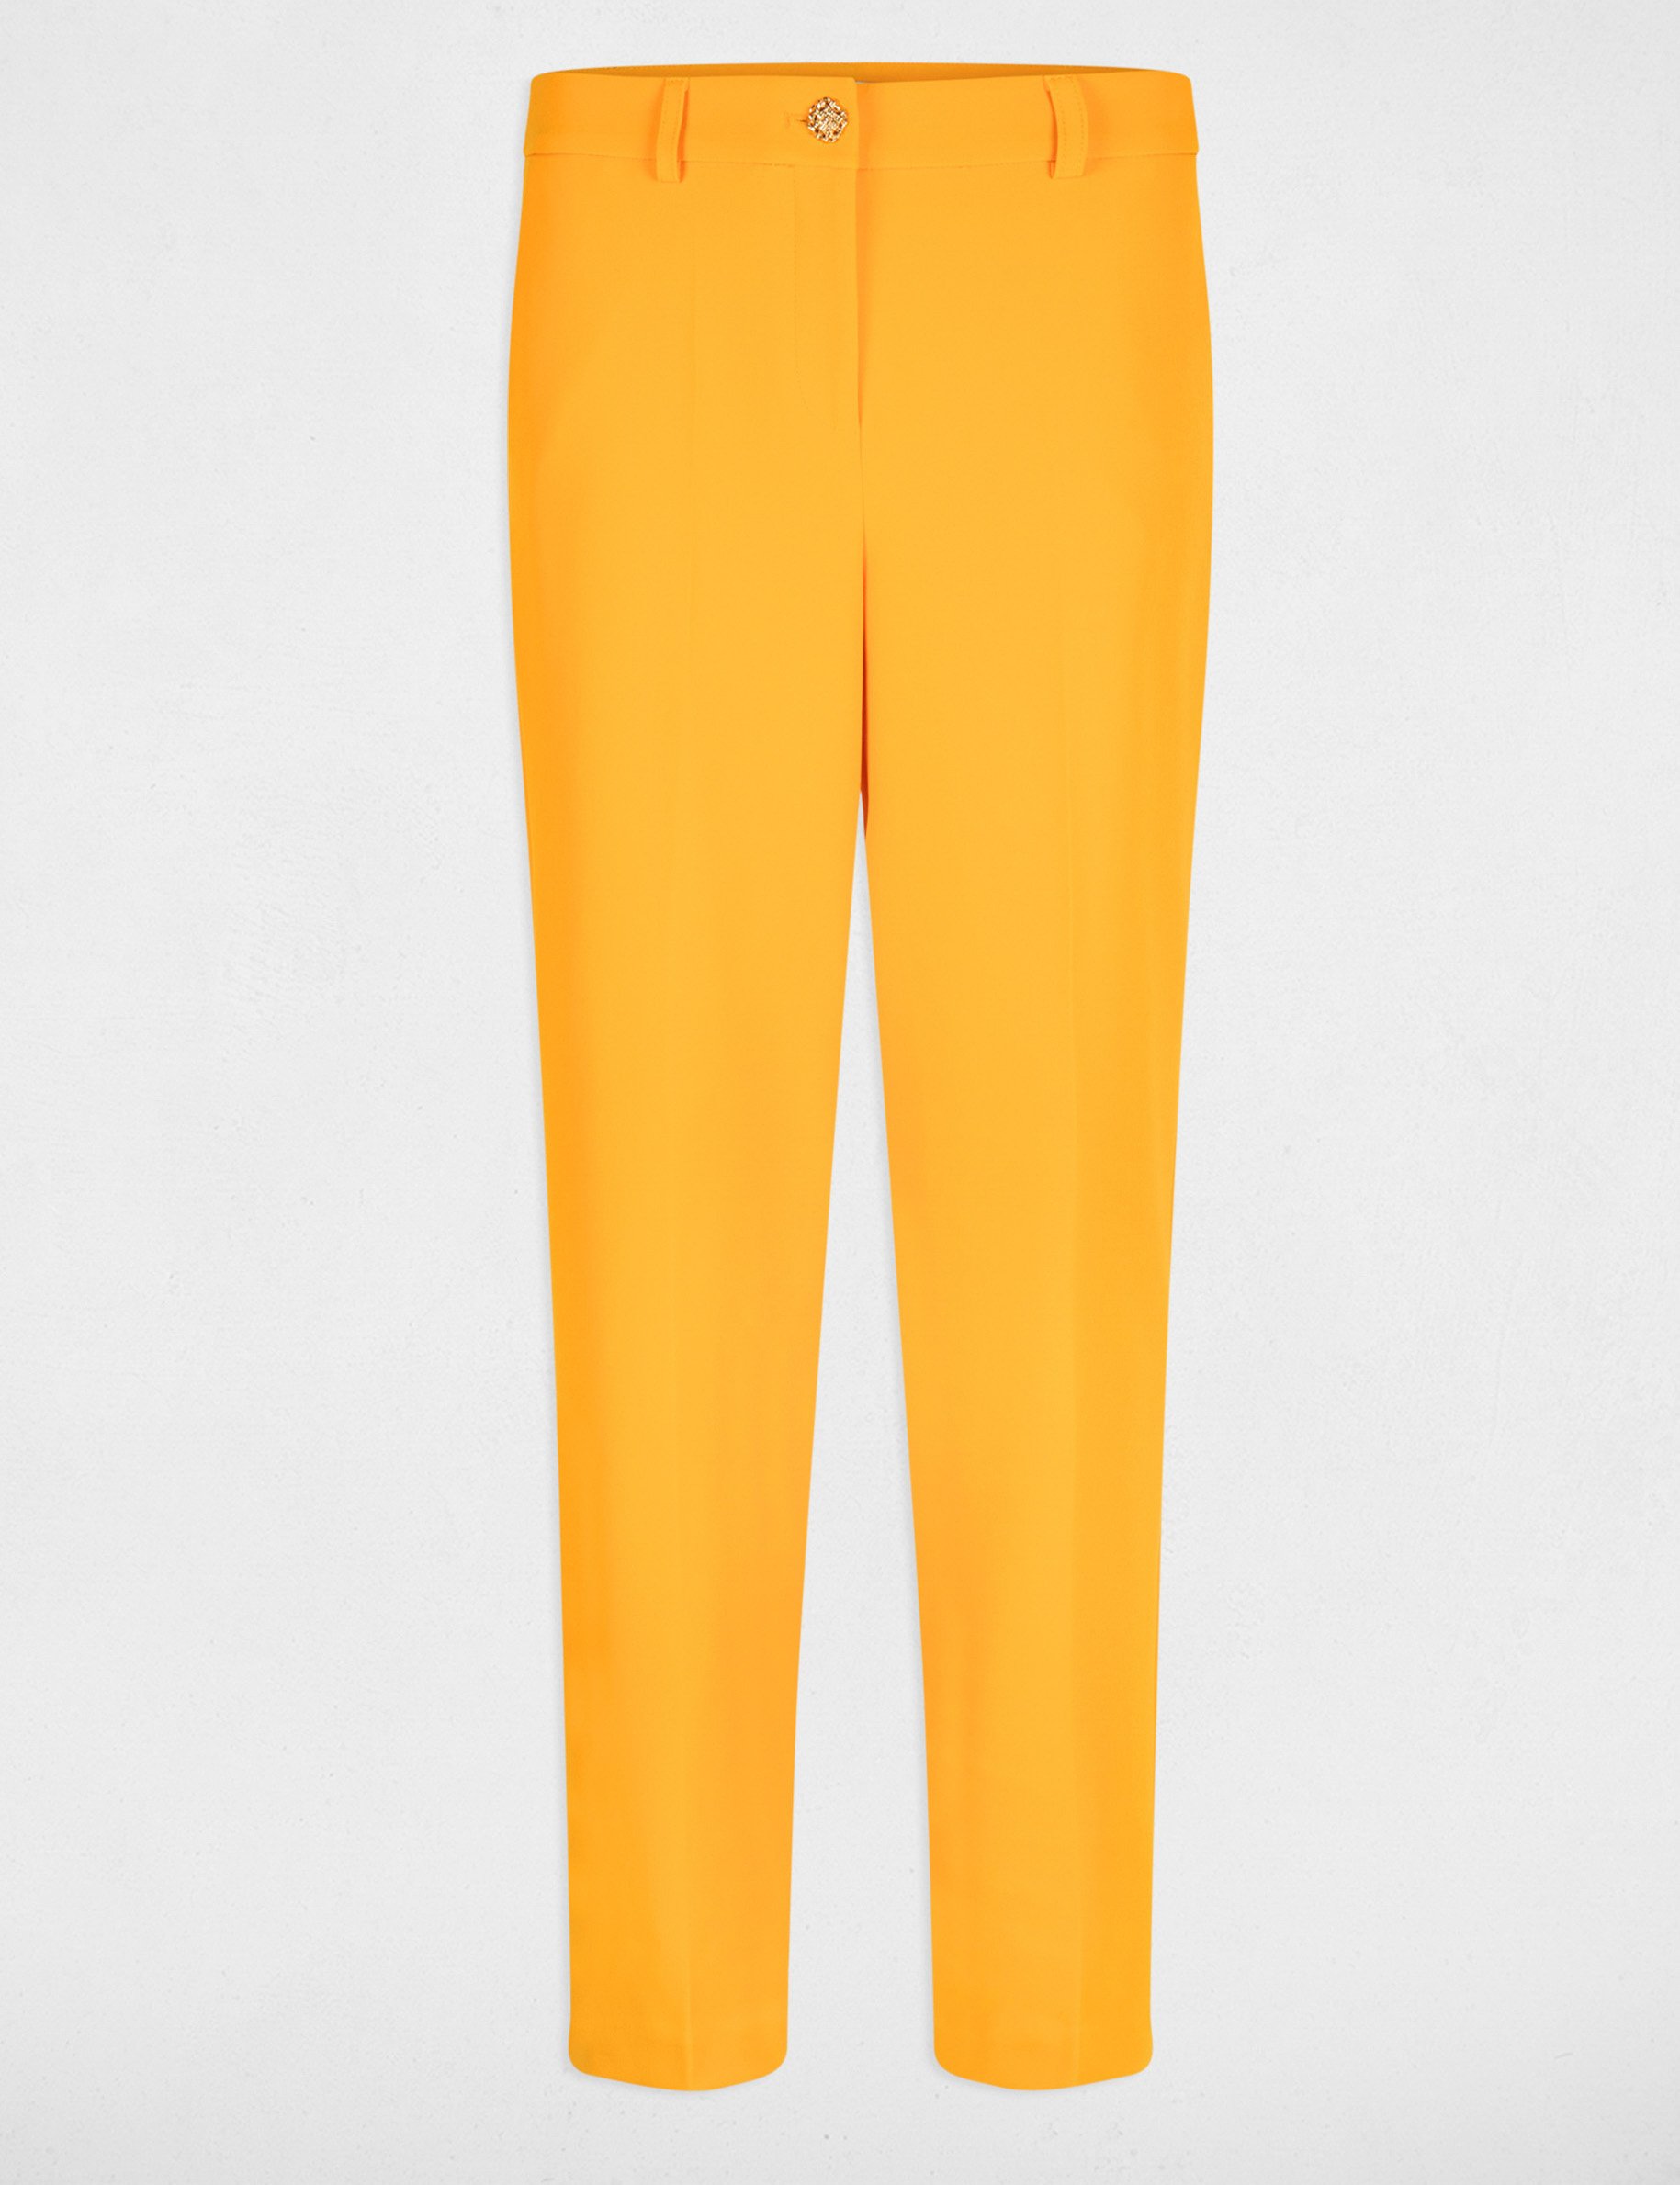 Skinny broek oranje vrouw